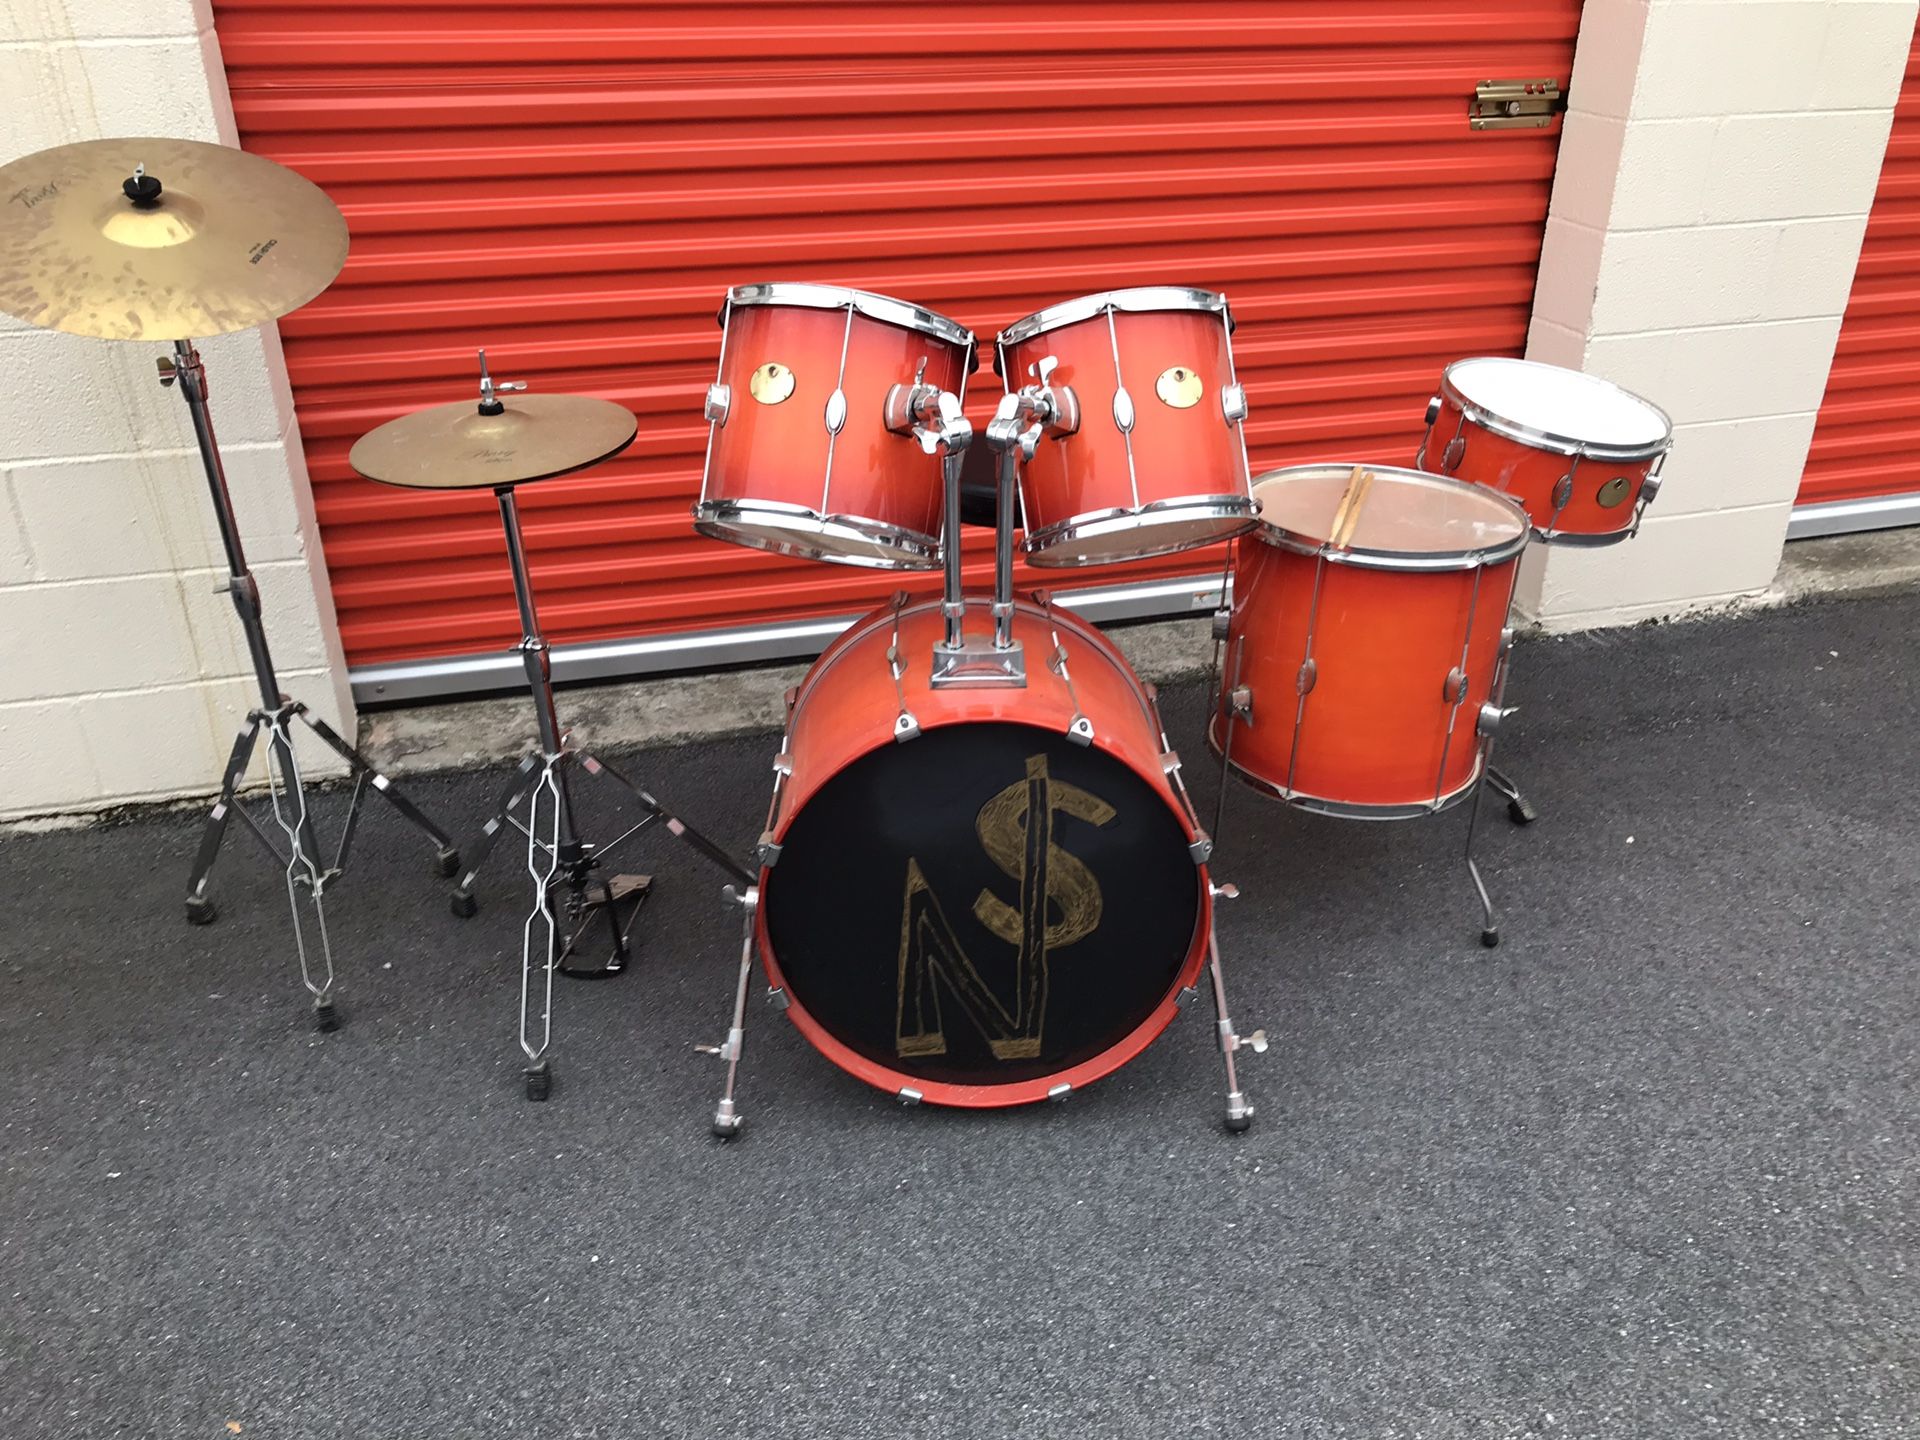 Borg drum set